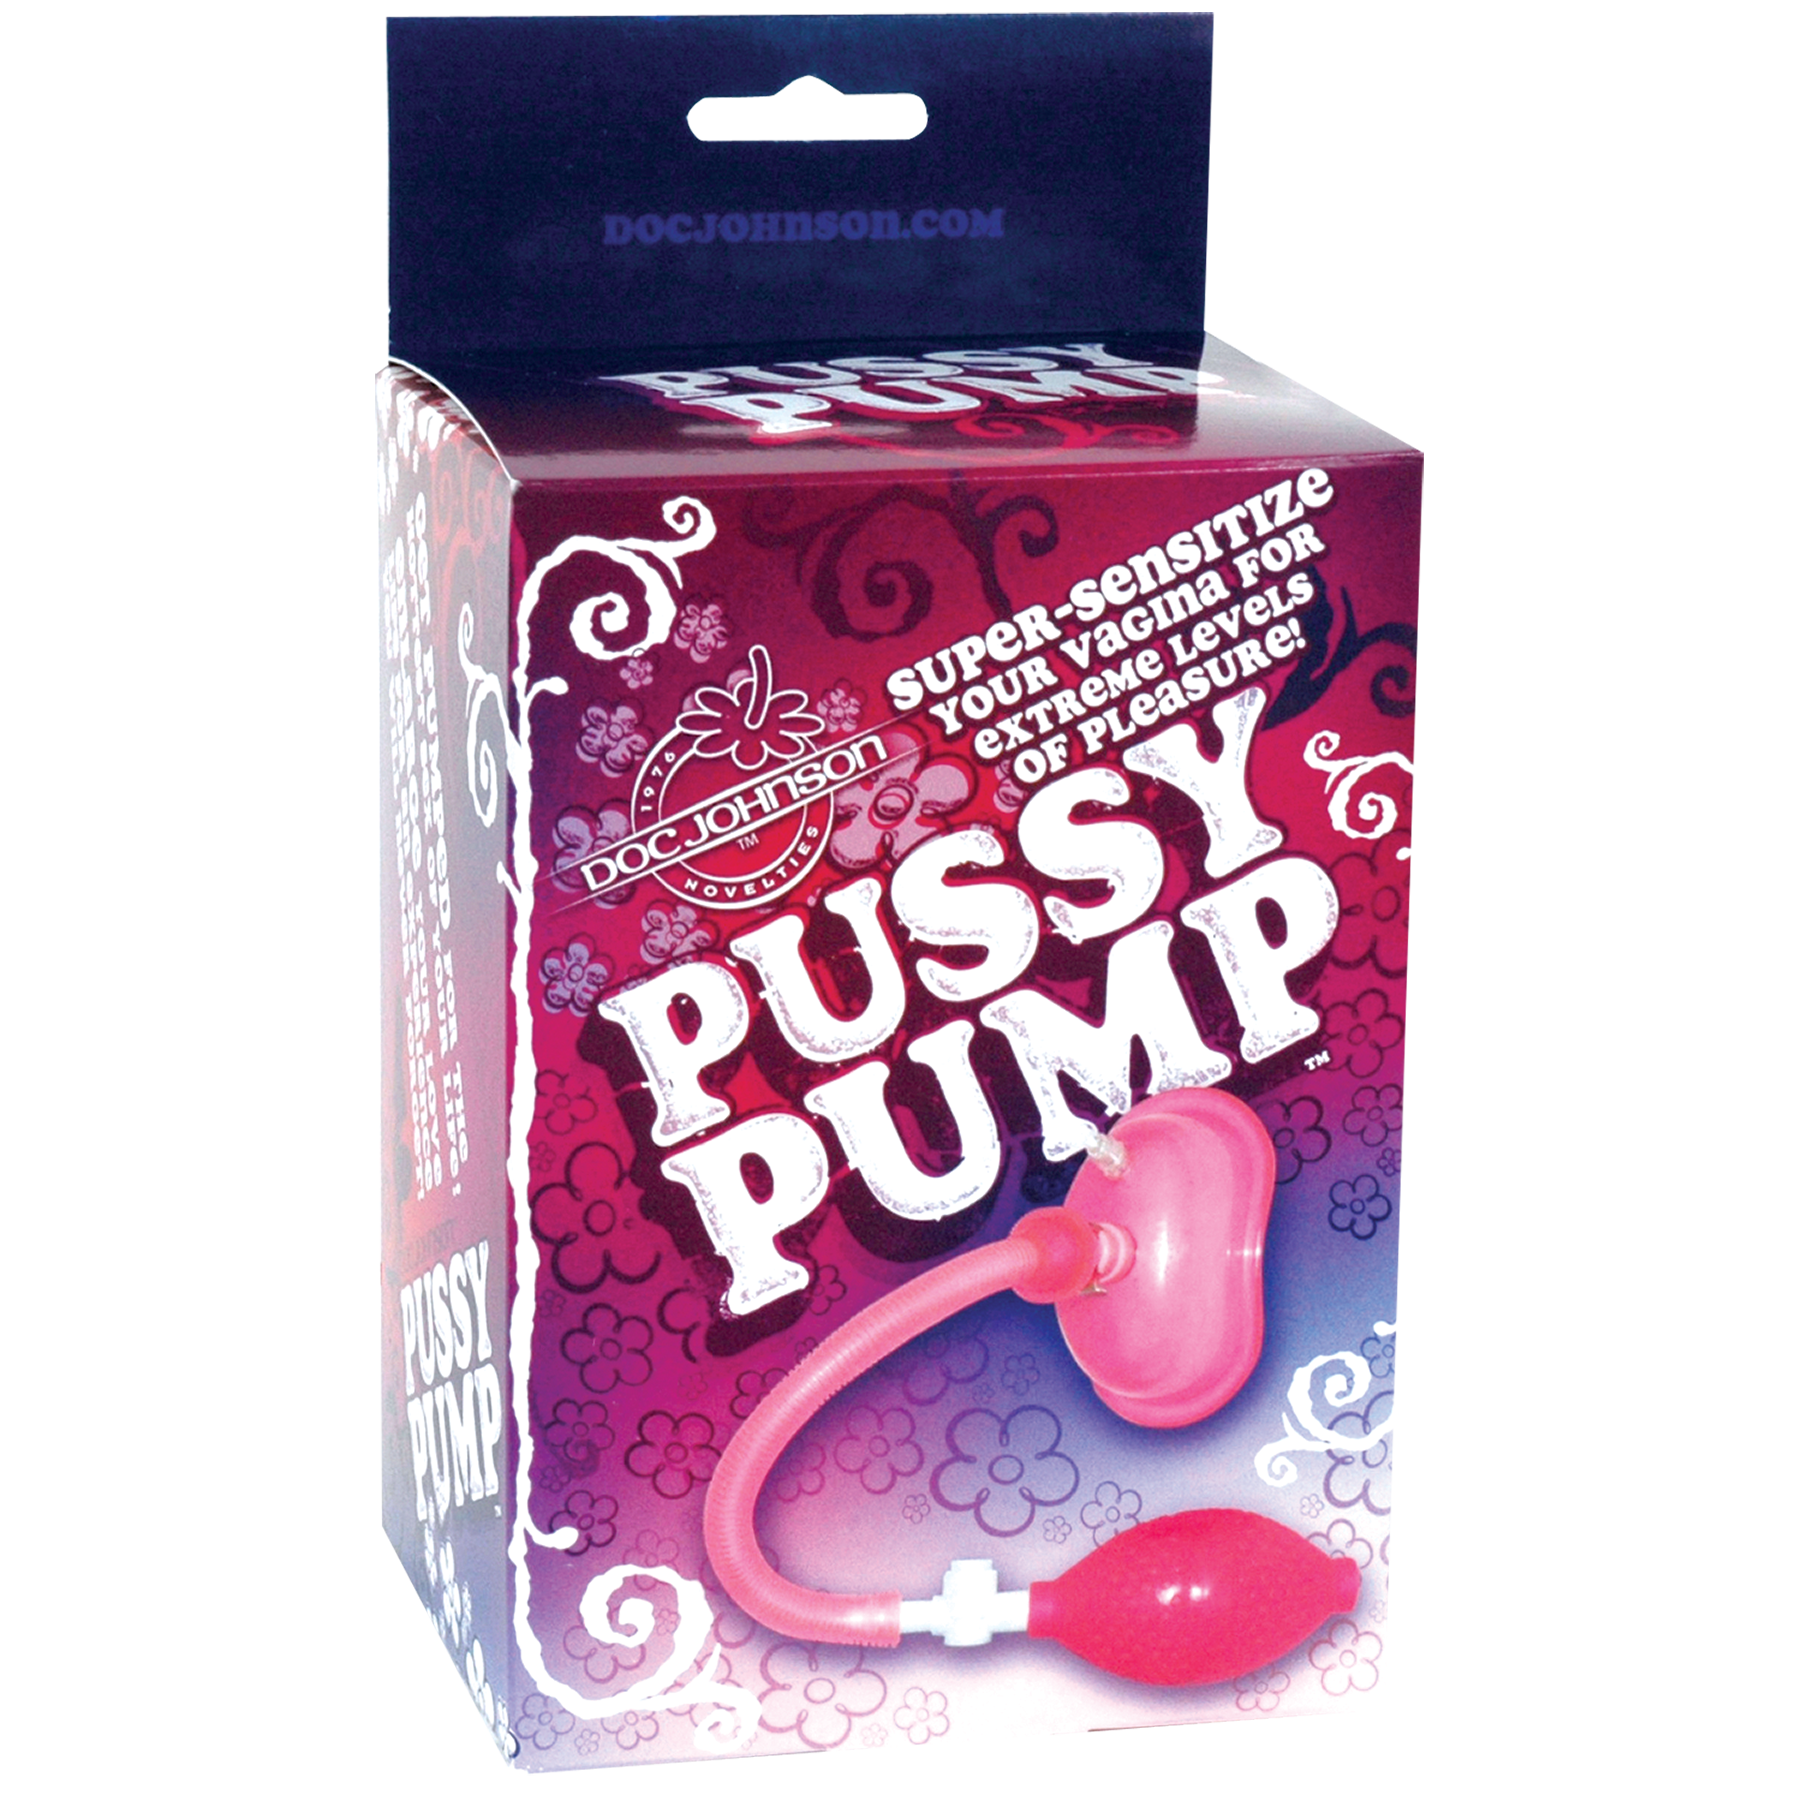 Doc Johnson Vaginal Pump Kit • Pussy Pump